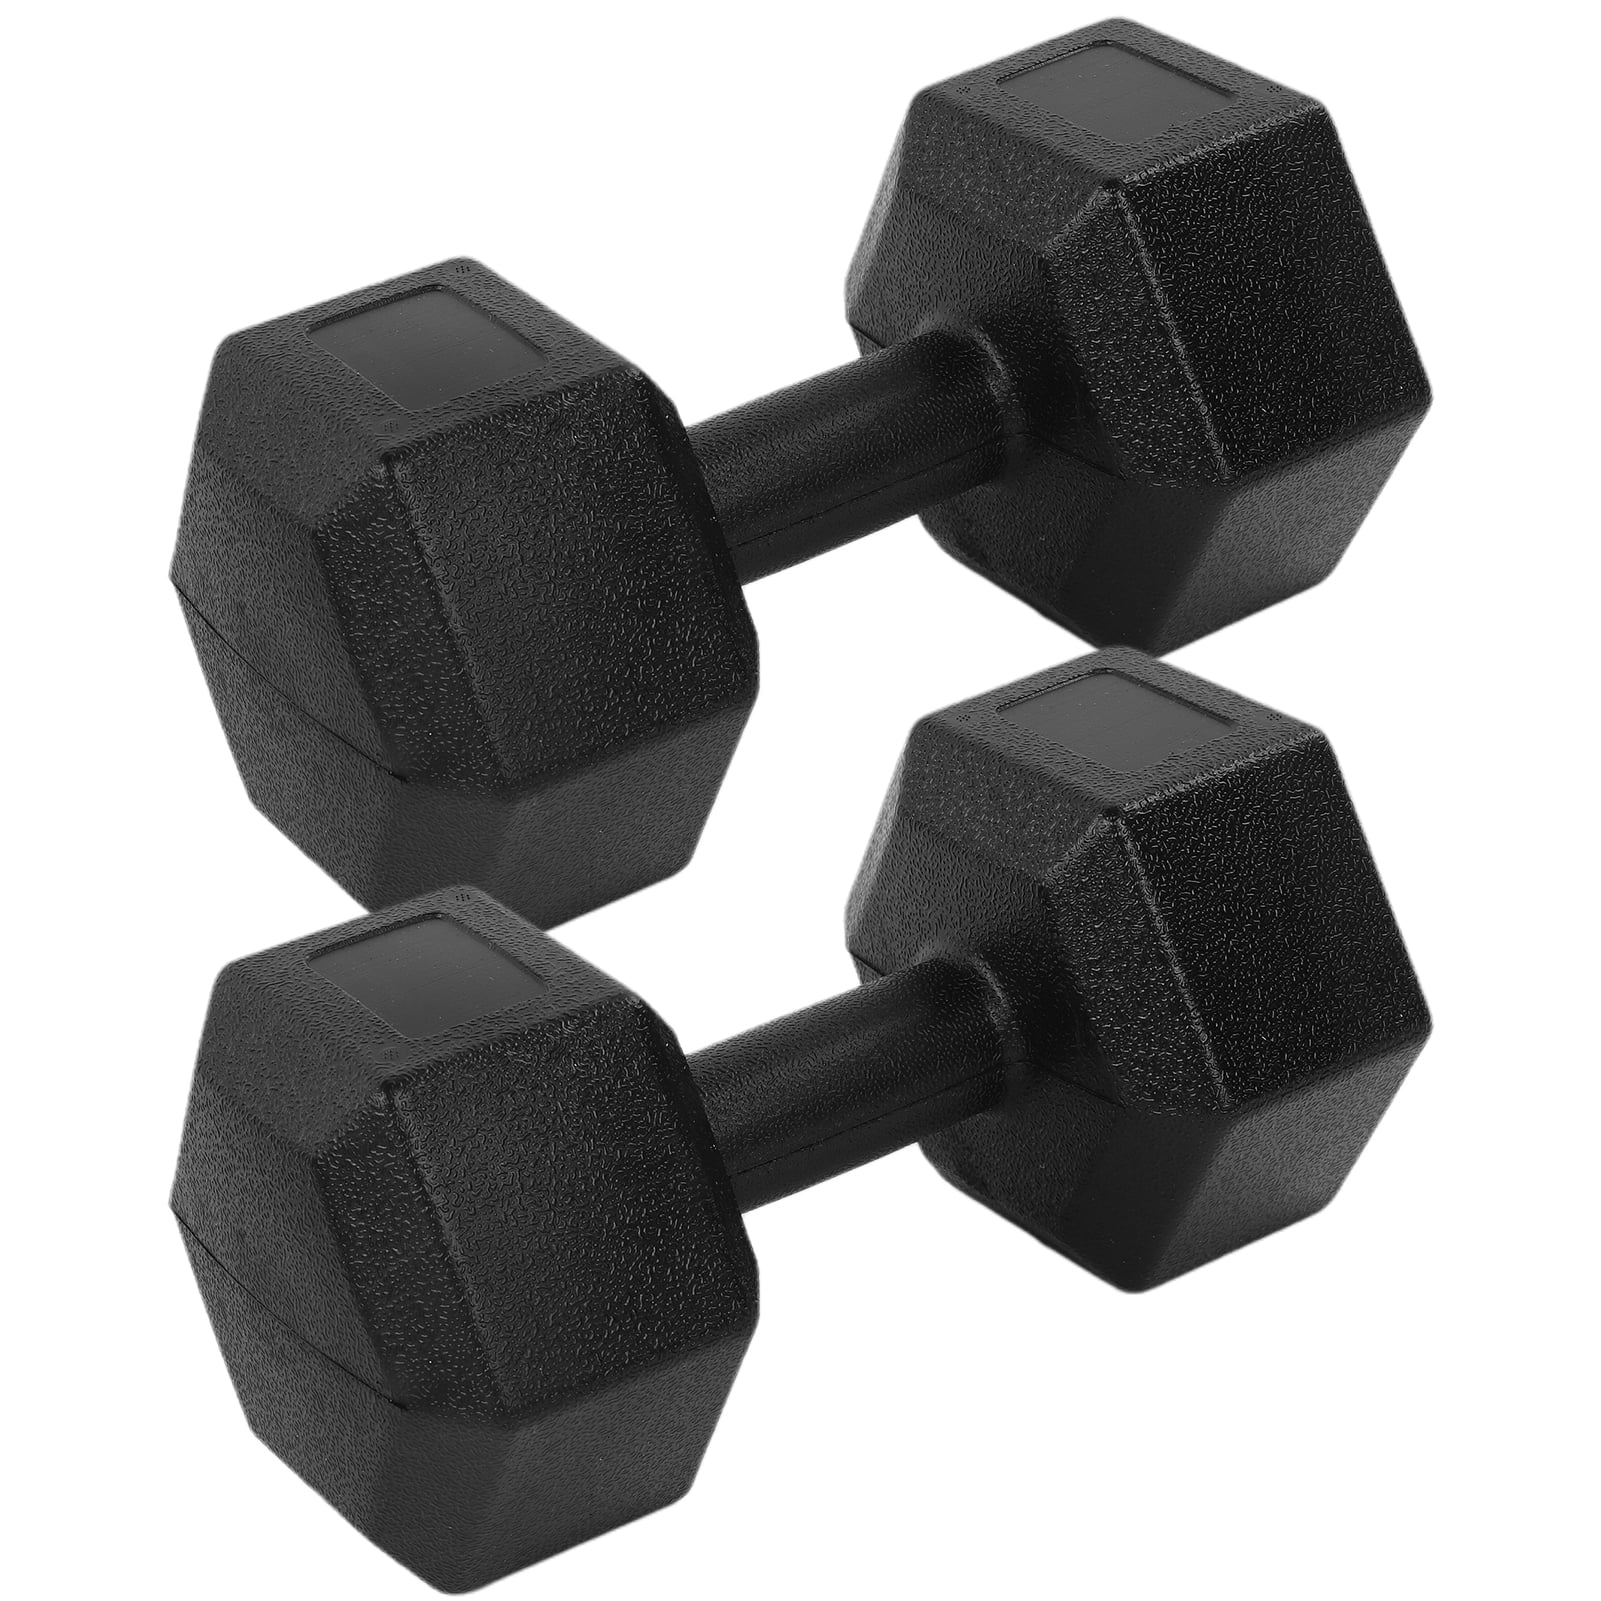 2 x 7.5Kg Hex Dumbells Cast Iron Hexagonal Dumbbells Weight Set Home Gym Fitness 